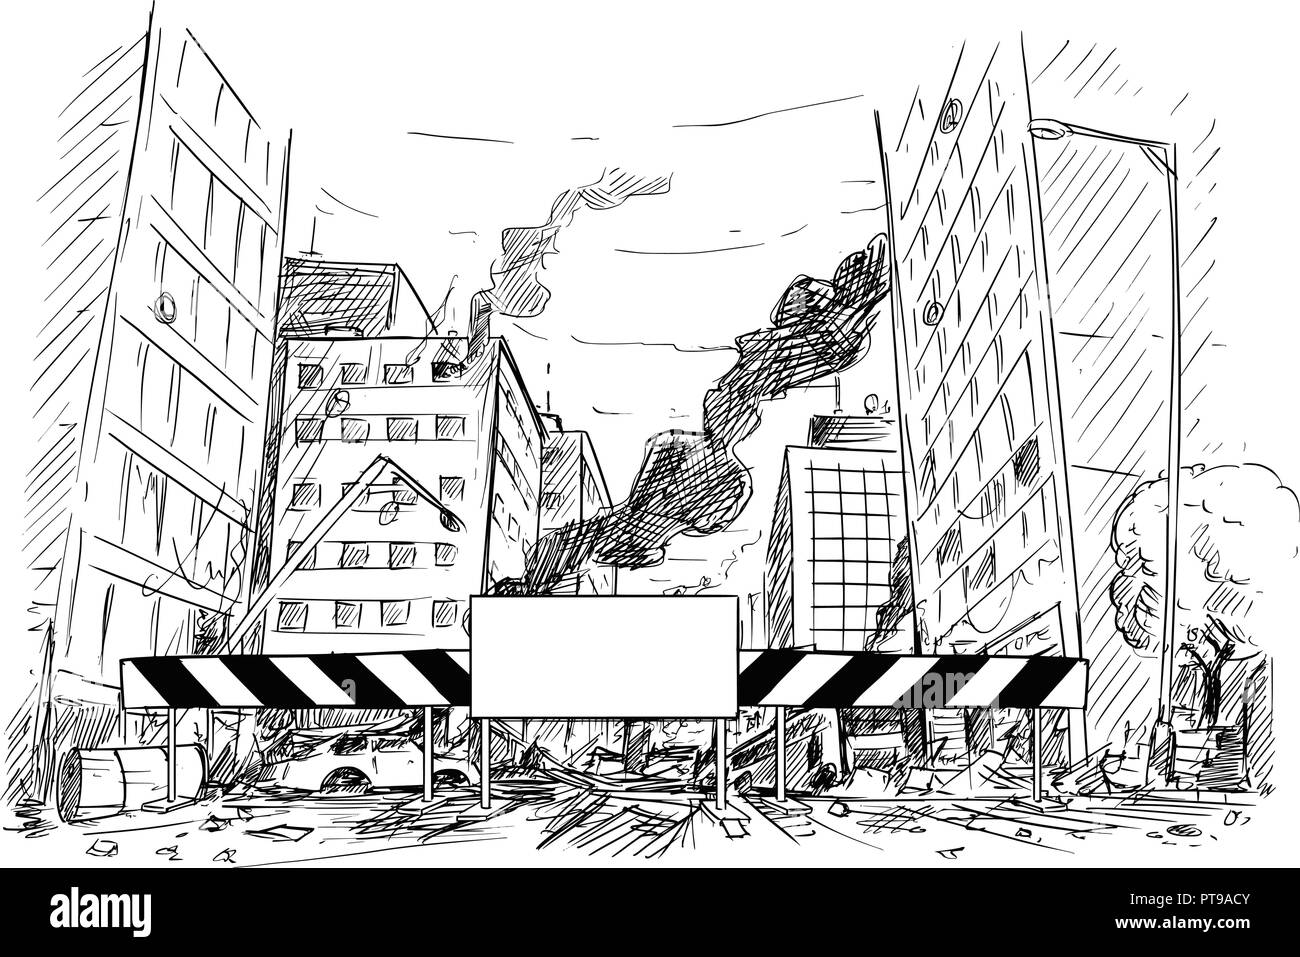 Disegno a mano di strada di città distrutte da guerre o sommossa o di emergenza Illustrazione Vettoriale